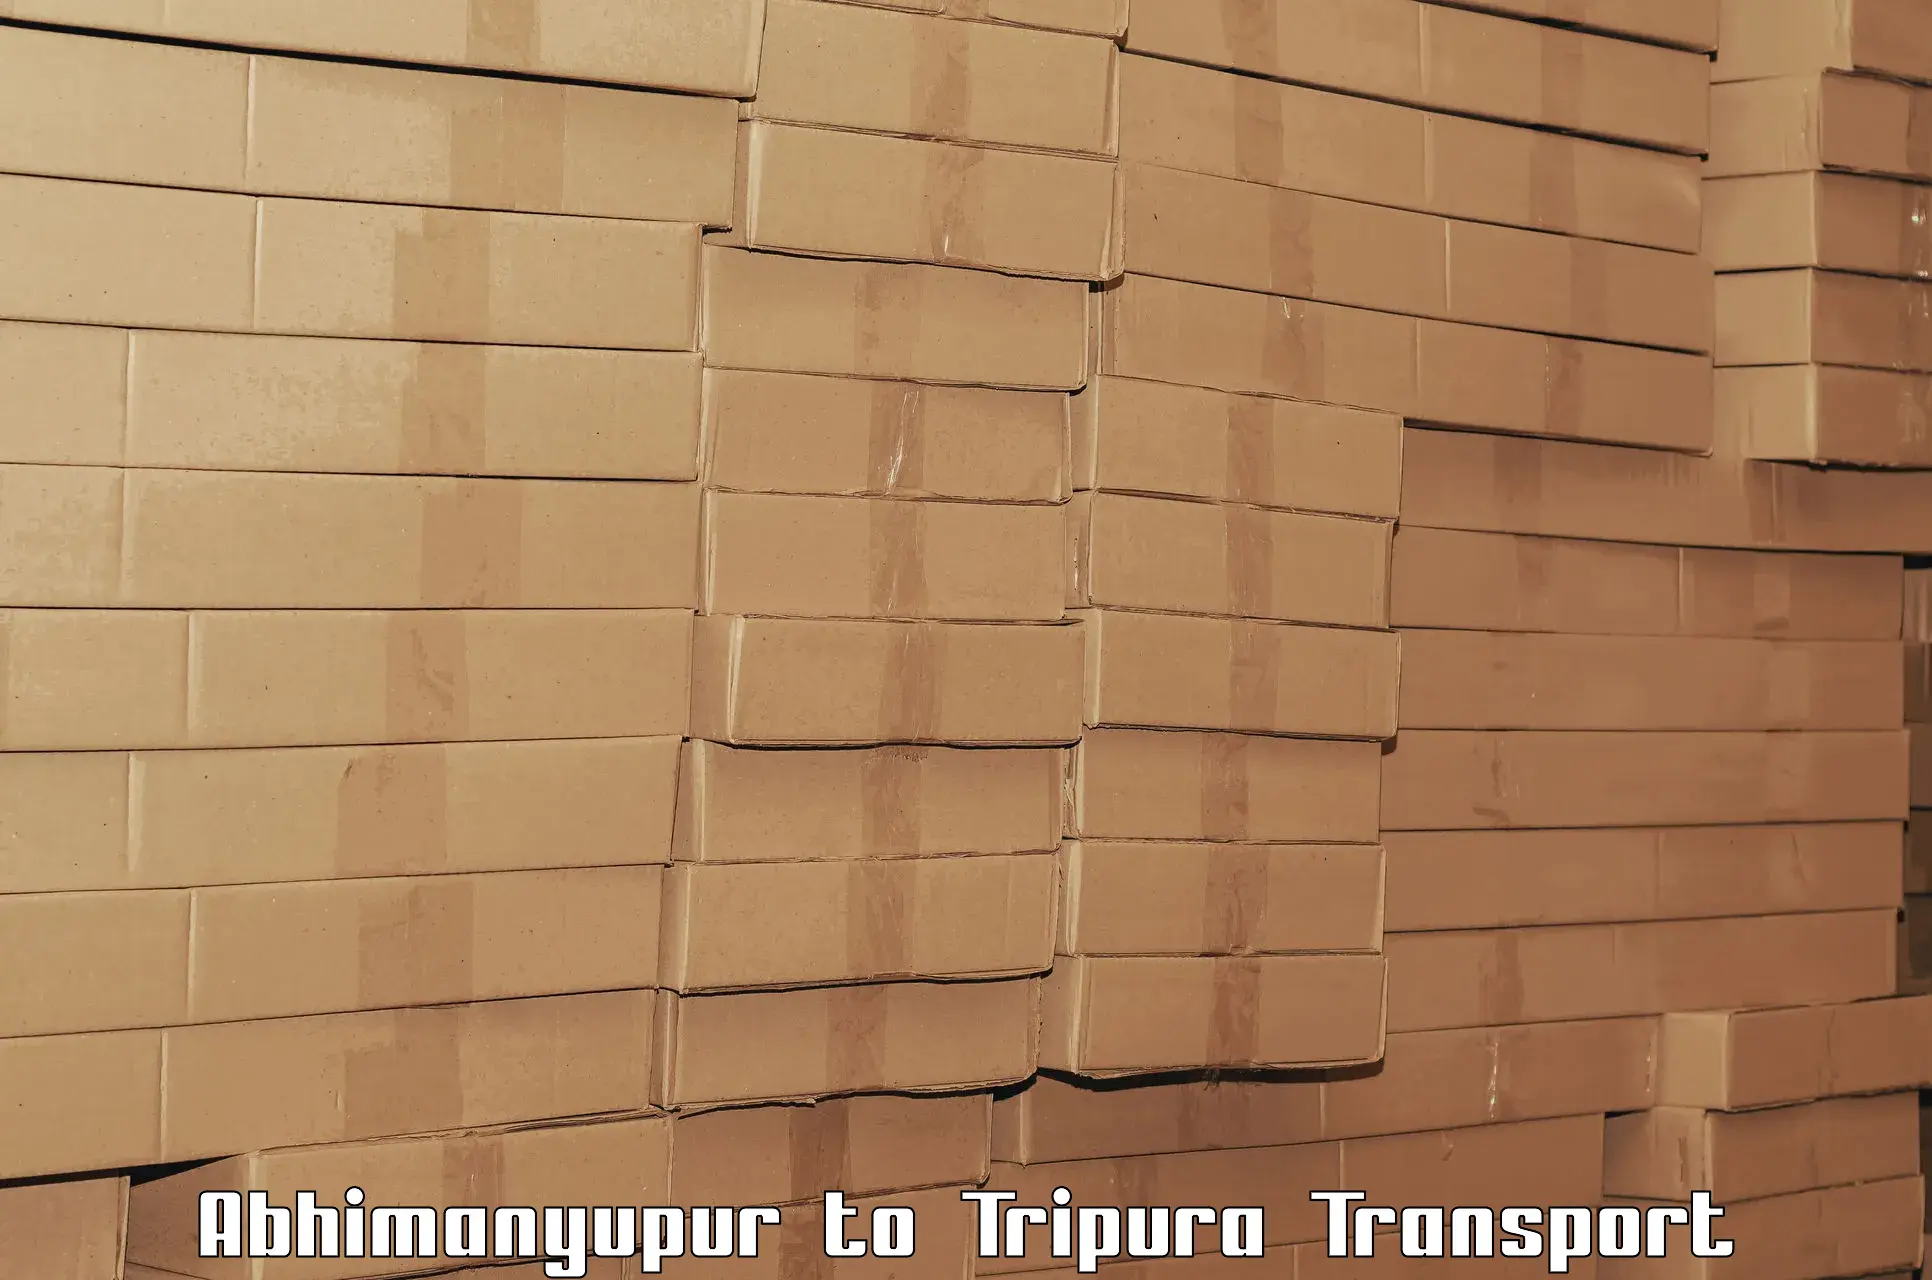 Container transportation services Abhimanyupur to Amarpur Gomati